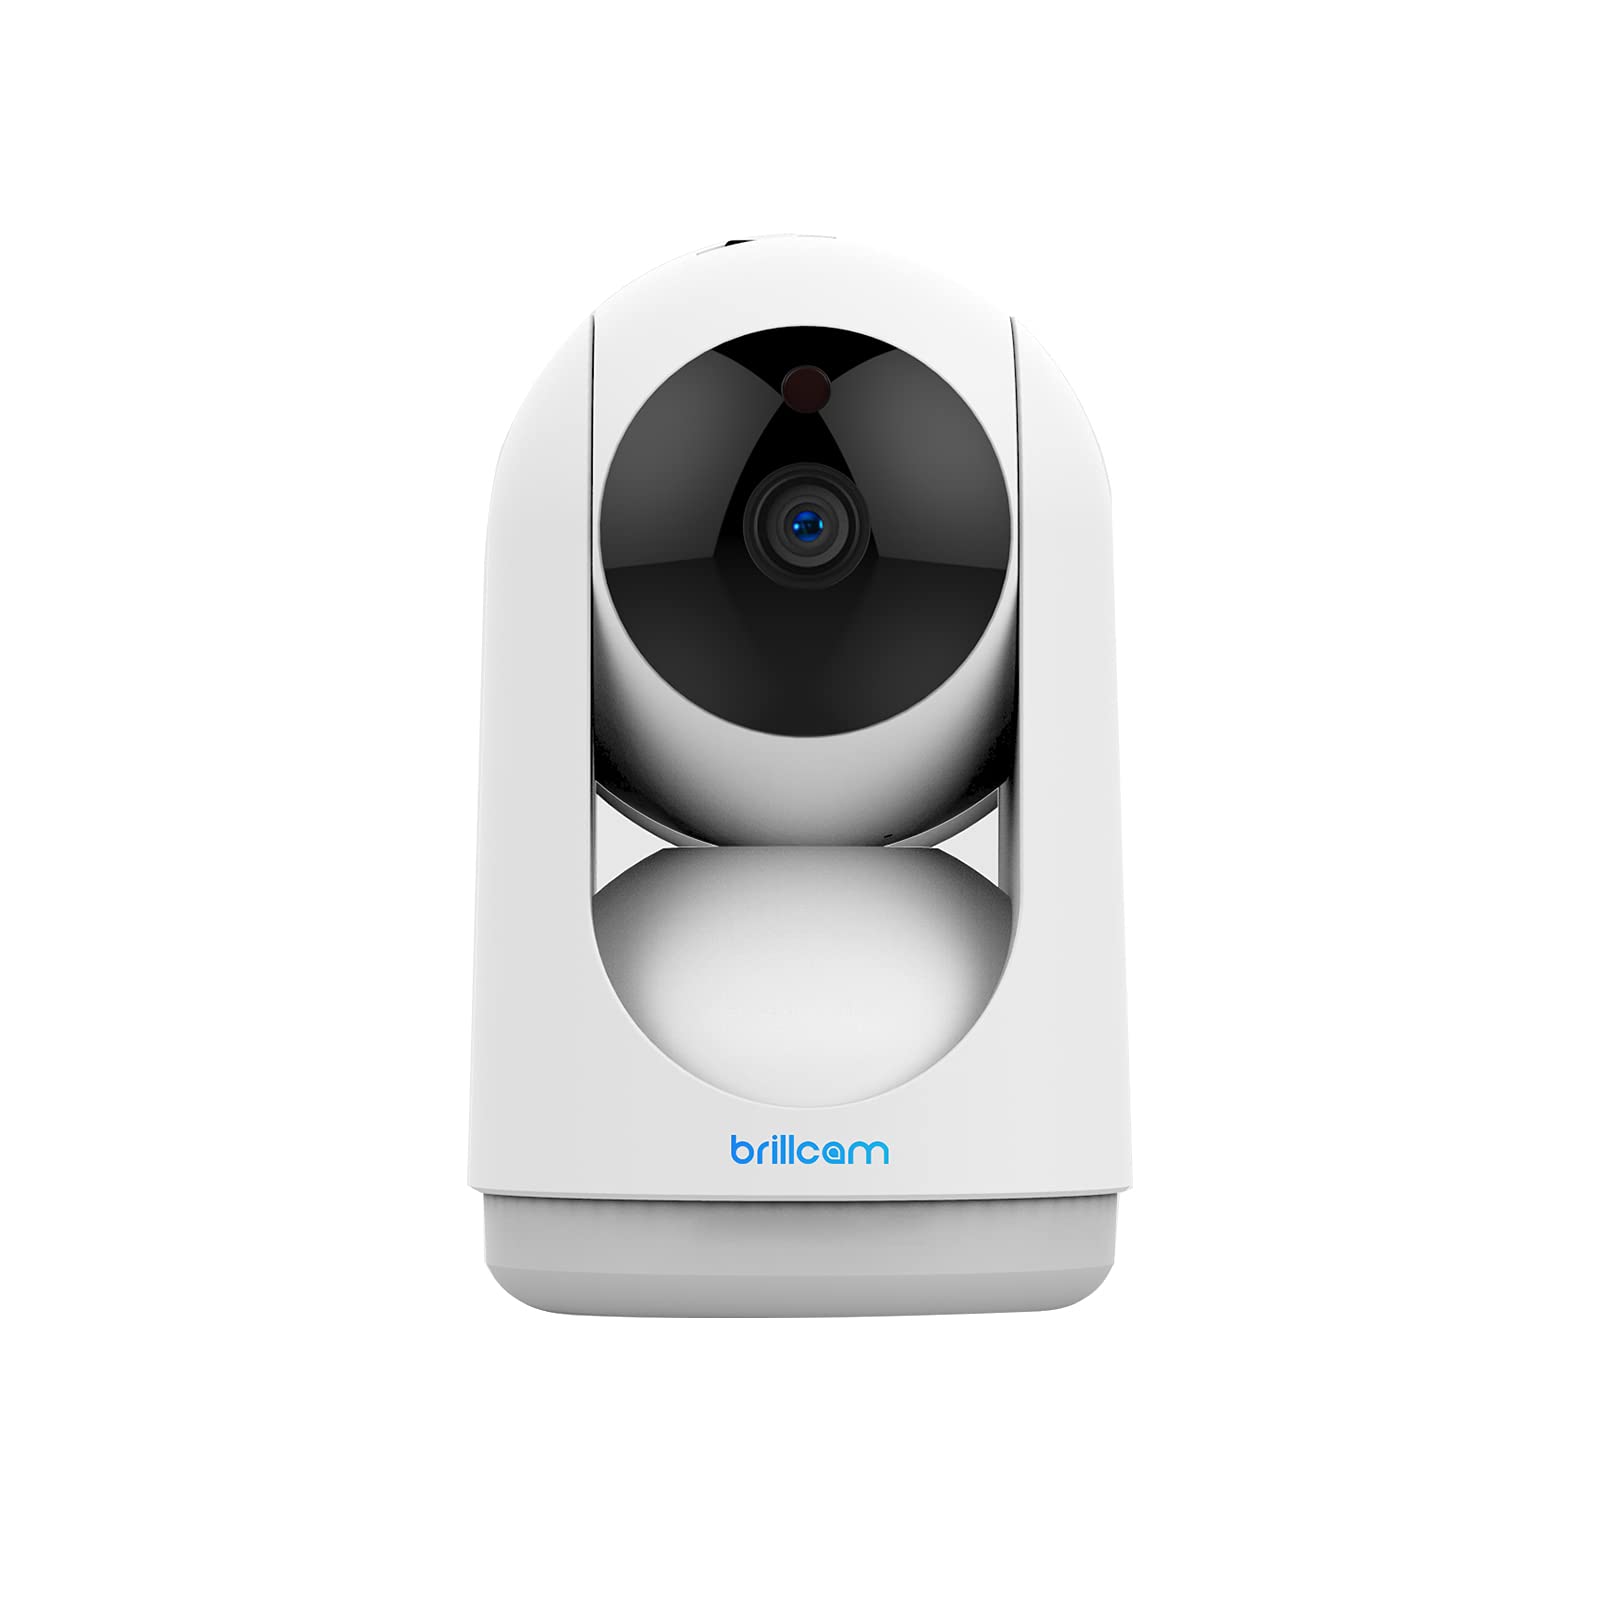 2021強化版500万高画素brillcamネットワーク WiFiカメラ 5mp ペットカメラ 屋内カメラ IP防犯監視カメラ 暗視撮影10M 動作検知 警報通知 双方向通話 固定2.8mmレンズ 128GBまでのmicroSD保存可…